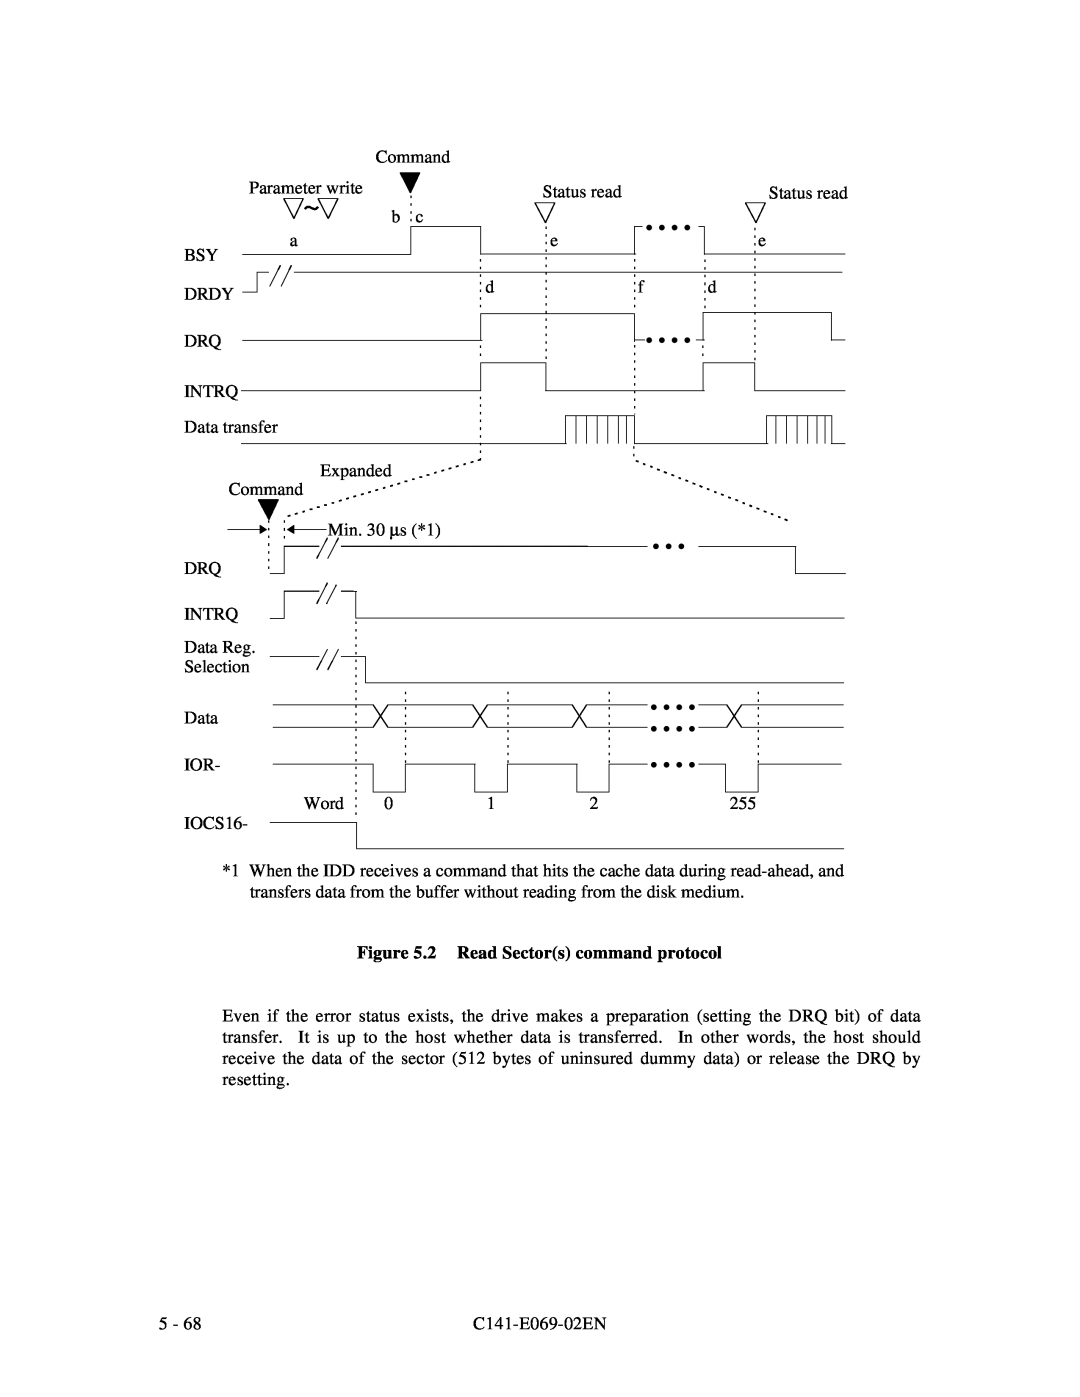 Fujitsu MPD3XXXAT manual 2 Read Sectors command protocol 